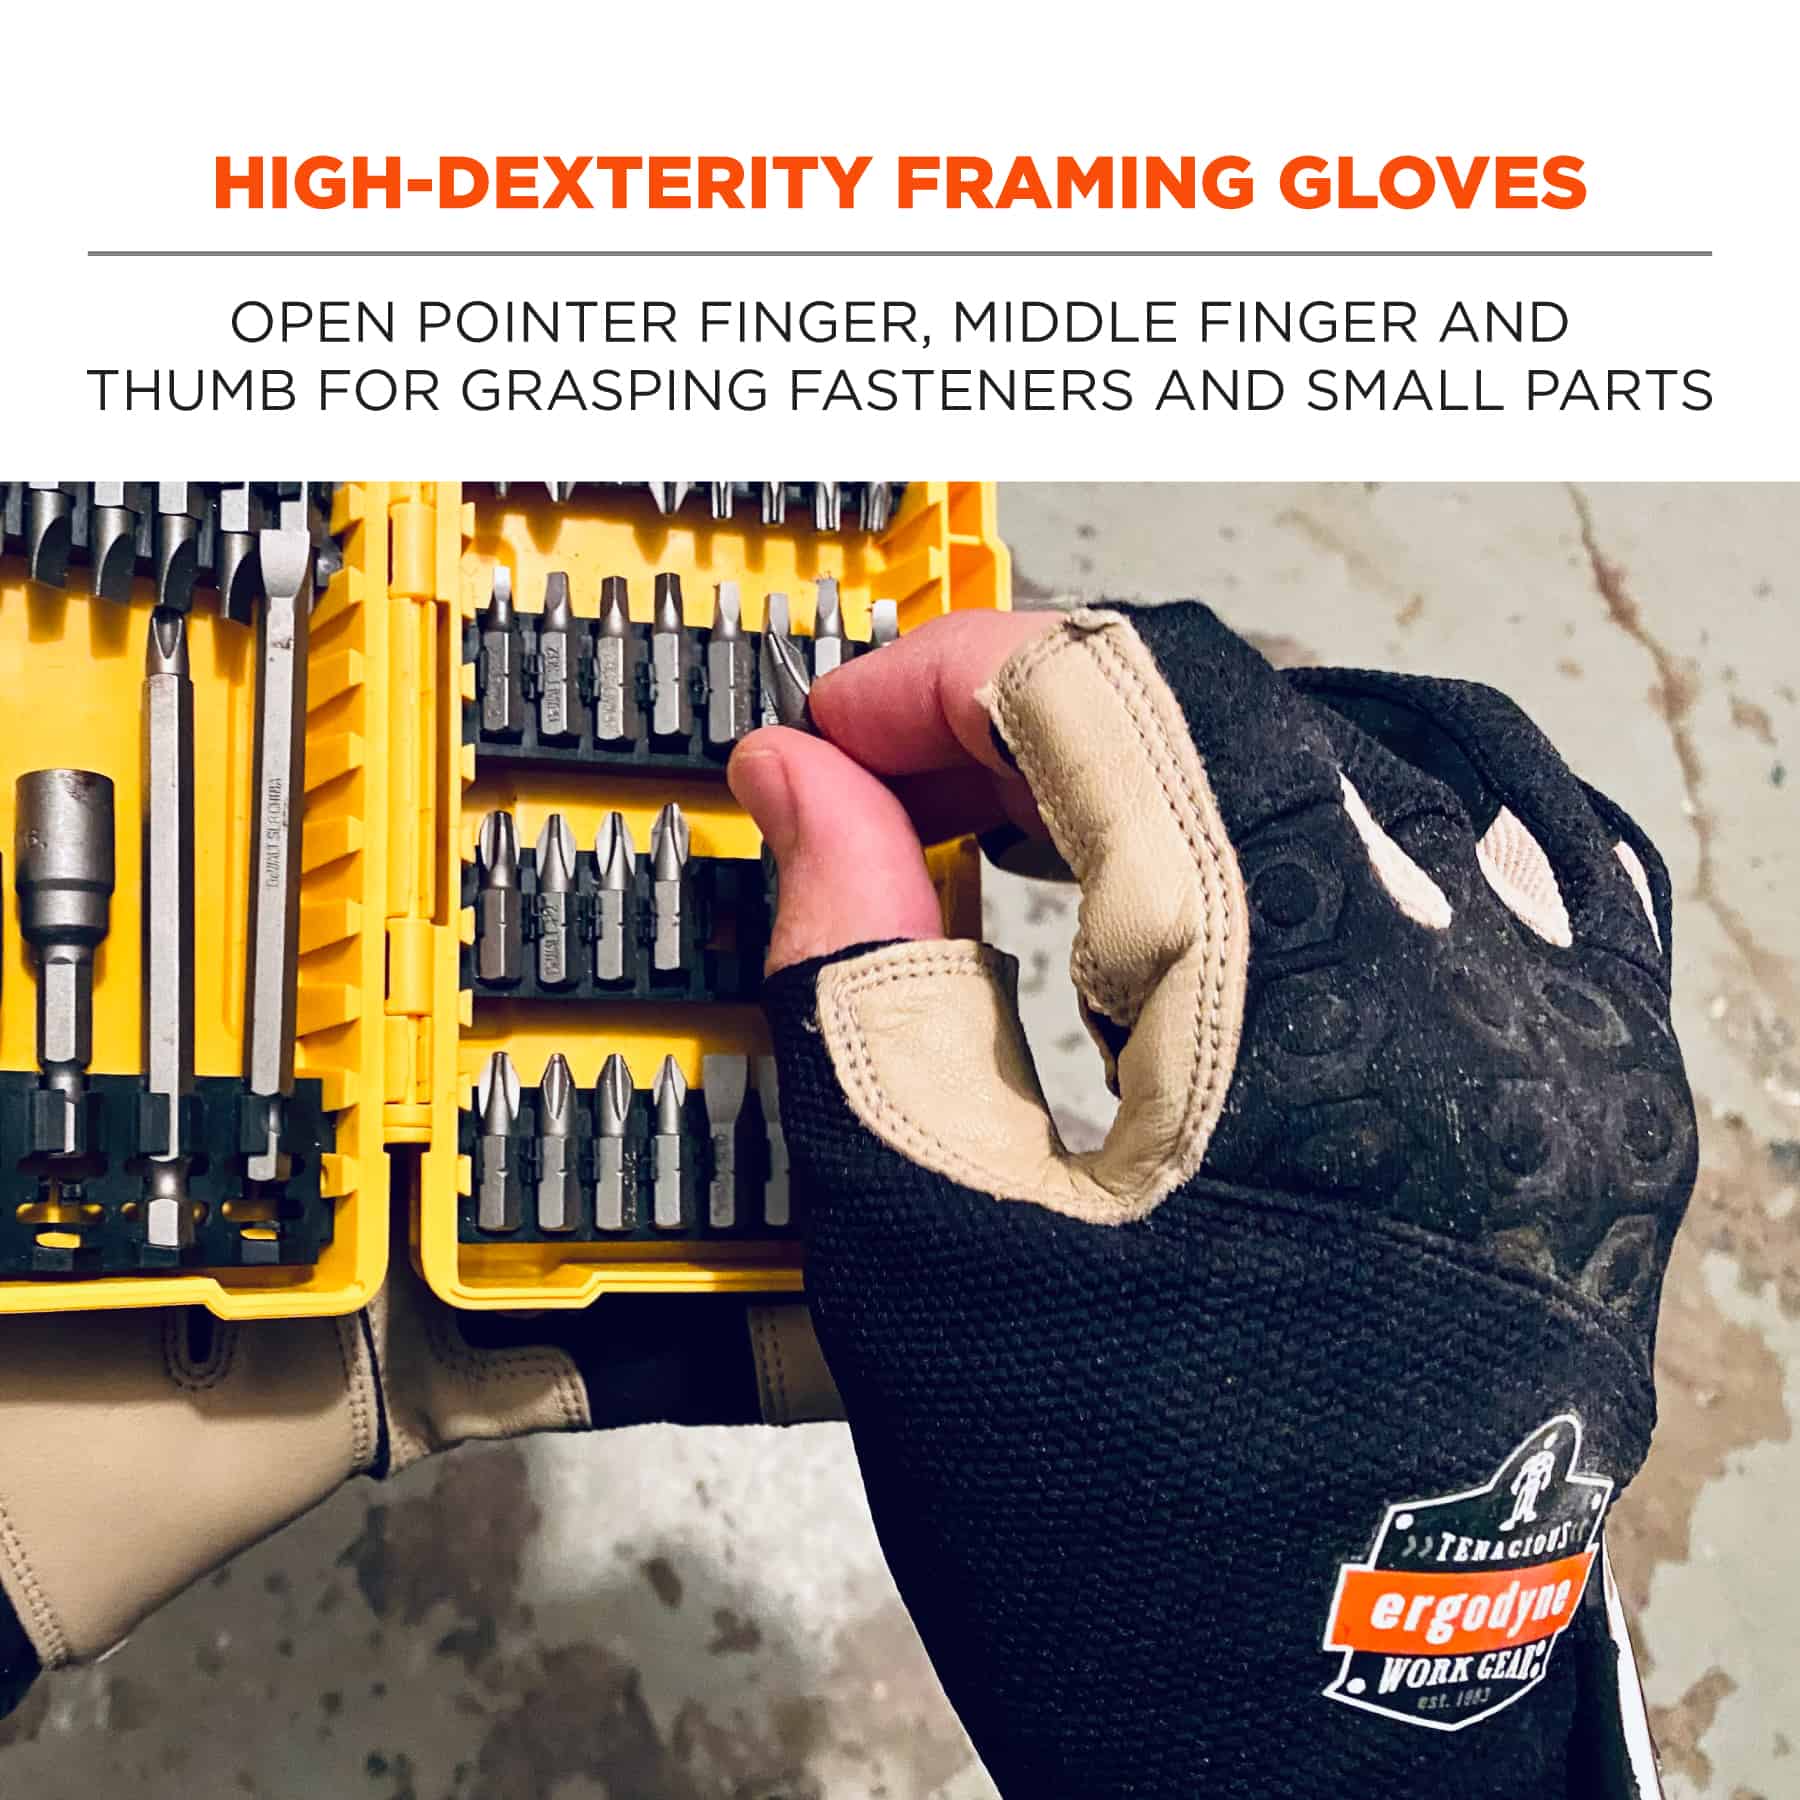 https://www.ergodyne.com/sites/default/files/product-images/17152-720ltr-heavy-duty-framing-gloves-high-dexterity-framing-gloves.jpg